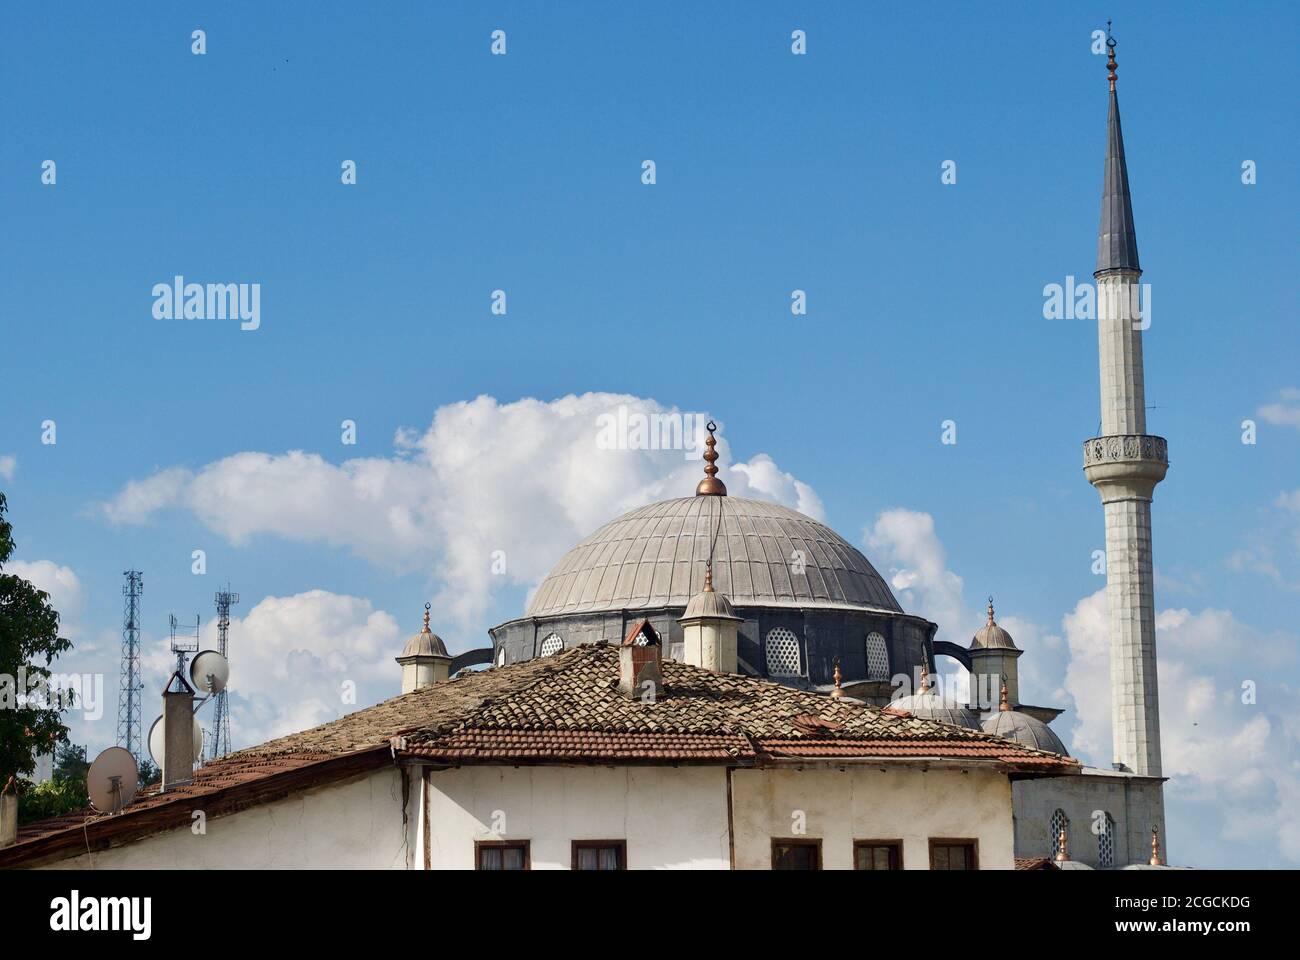 L'esterno della moschea di Izzet Pasha risale al XVIII secolo e prende il nome da İzzet Mehmet Pasha, un alto rango ufficiale dell'epoca ottomana. Safranbolu Turchia Foto Stock